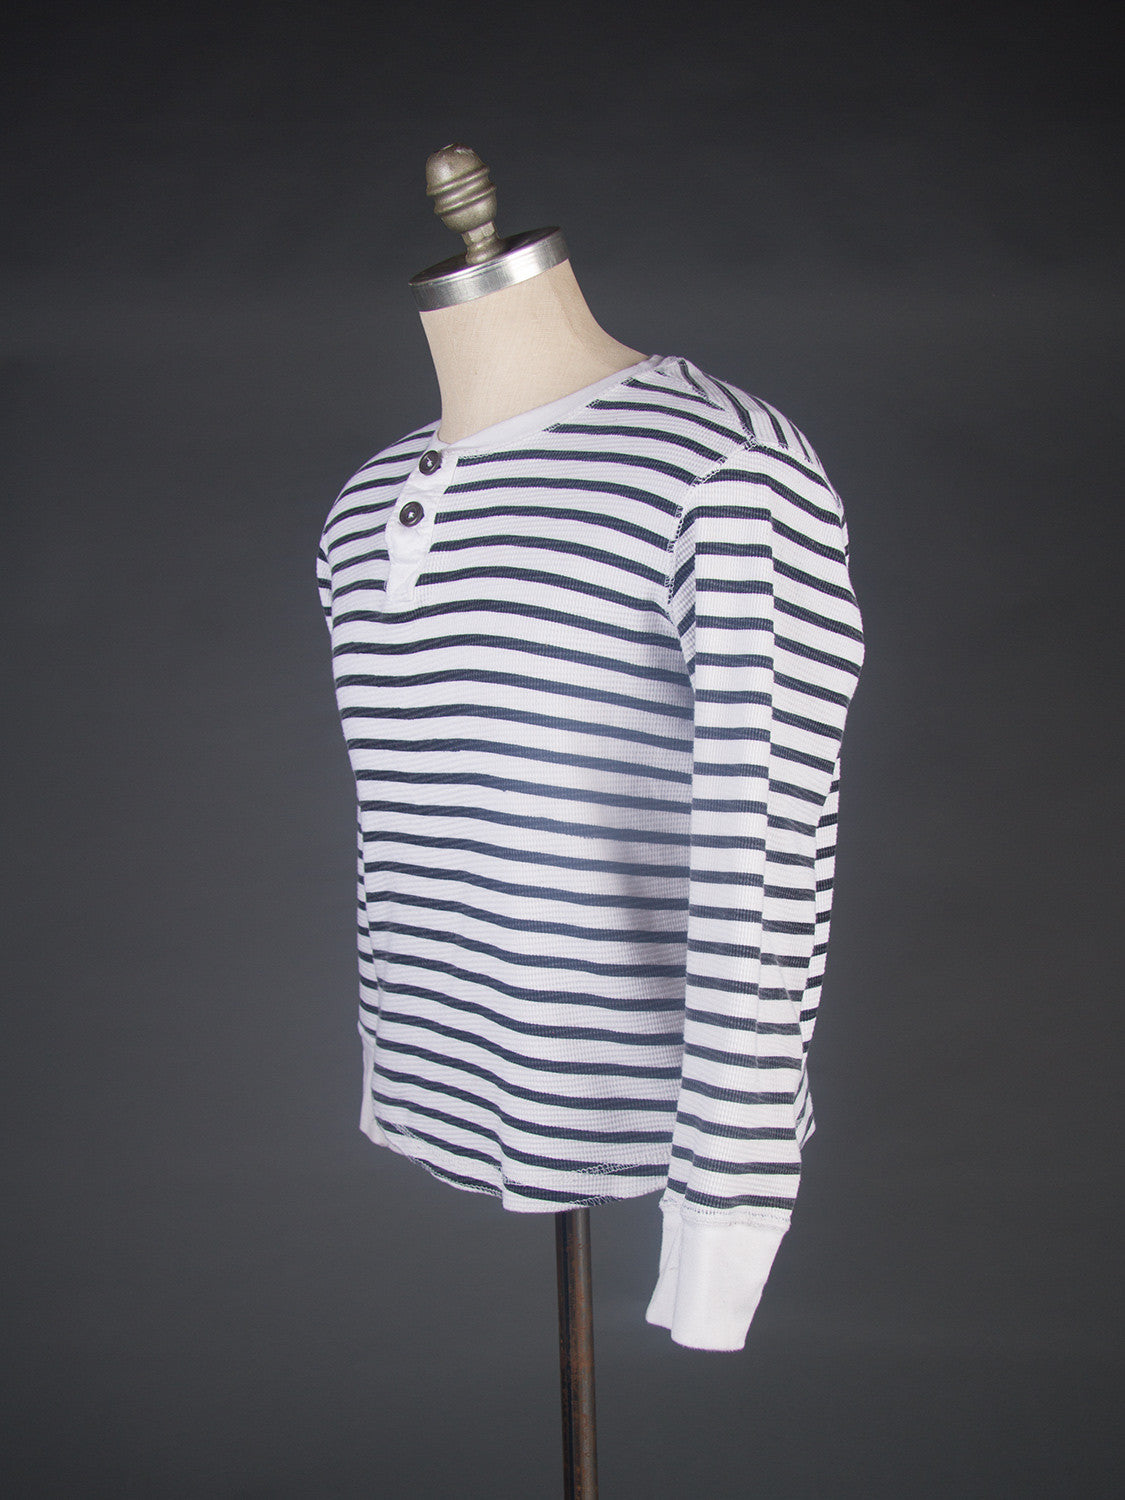 Men's Black & White Striped Henley Shirt, Medium